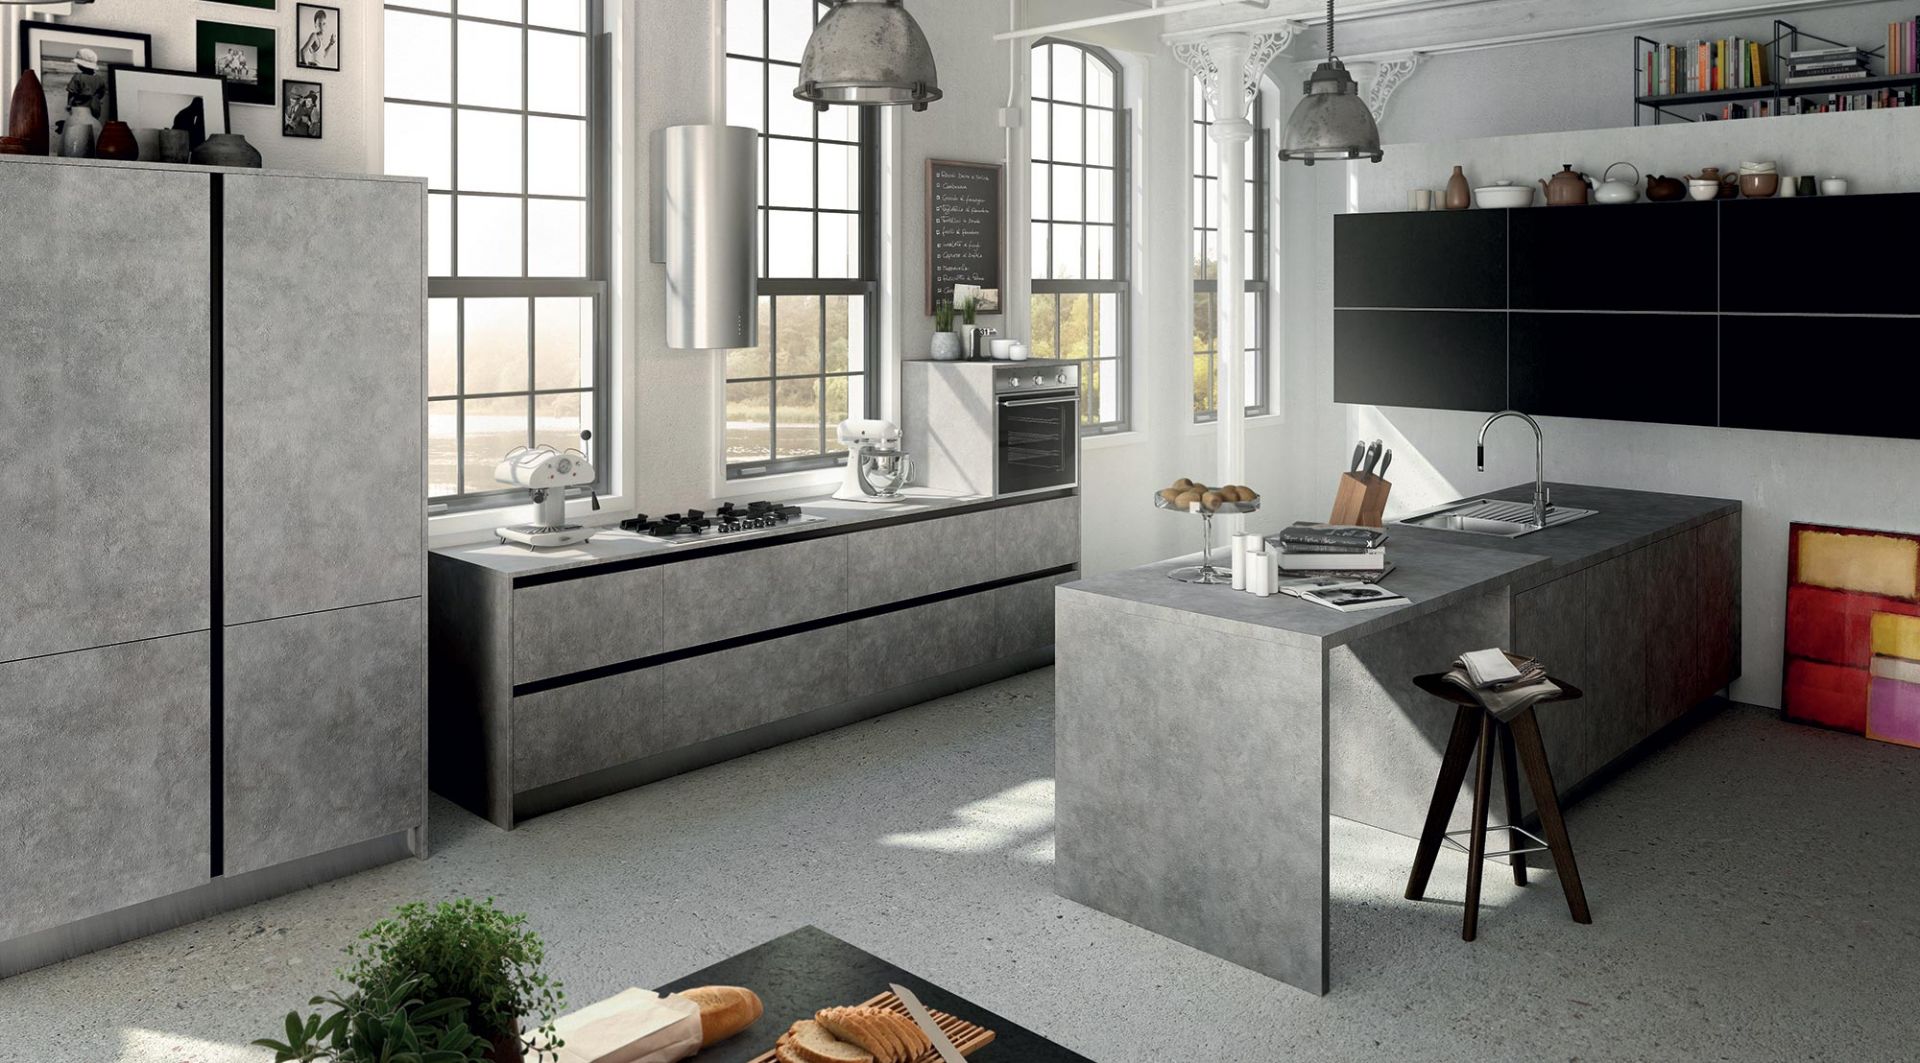 Fronty imitujące kamień lub beton prezentują się surowo i minimalistyczne. To doskonale rozwiązanie do nowoczesnej kuchni. Fot. Municchi Cucine